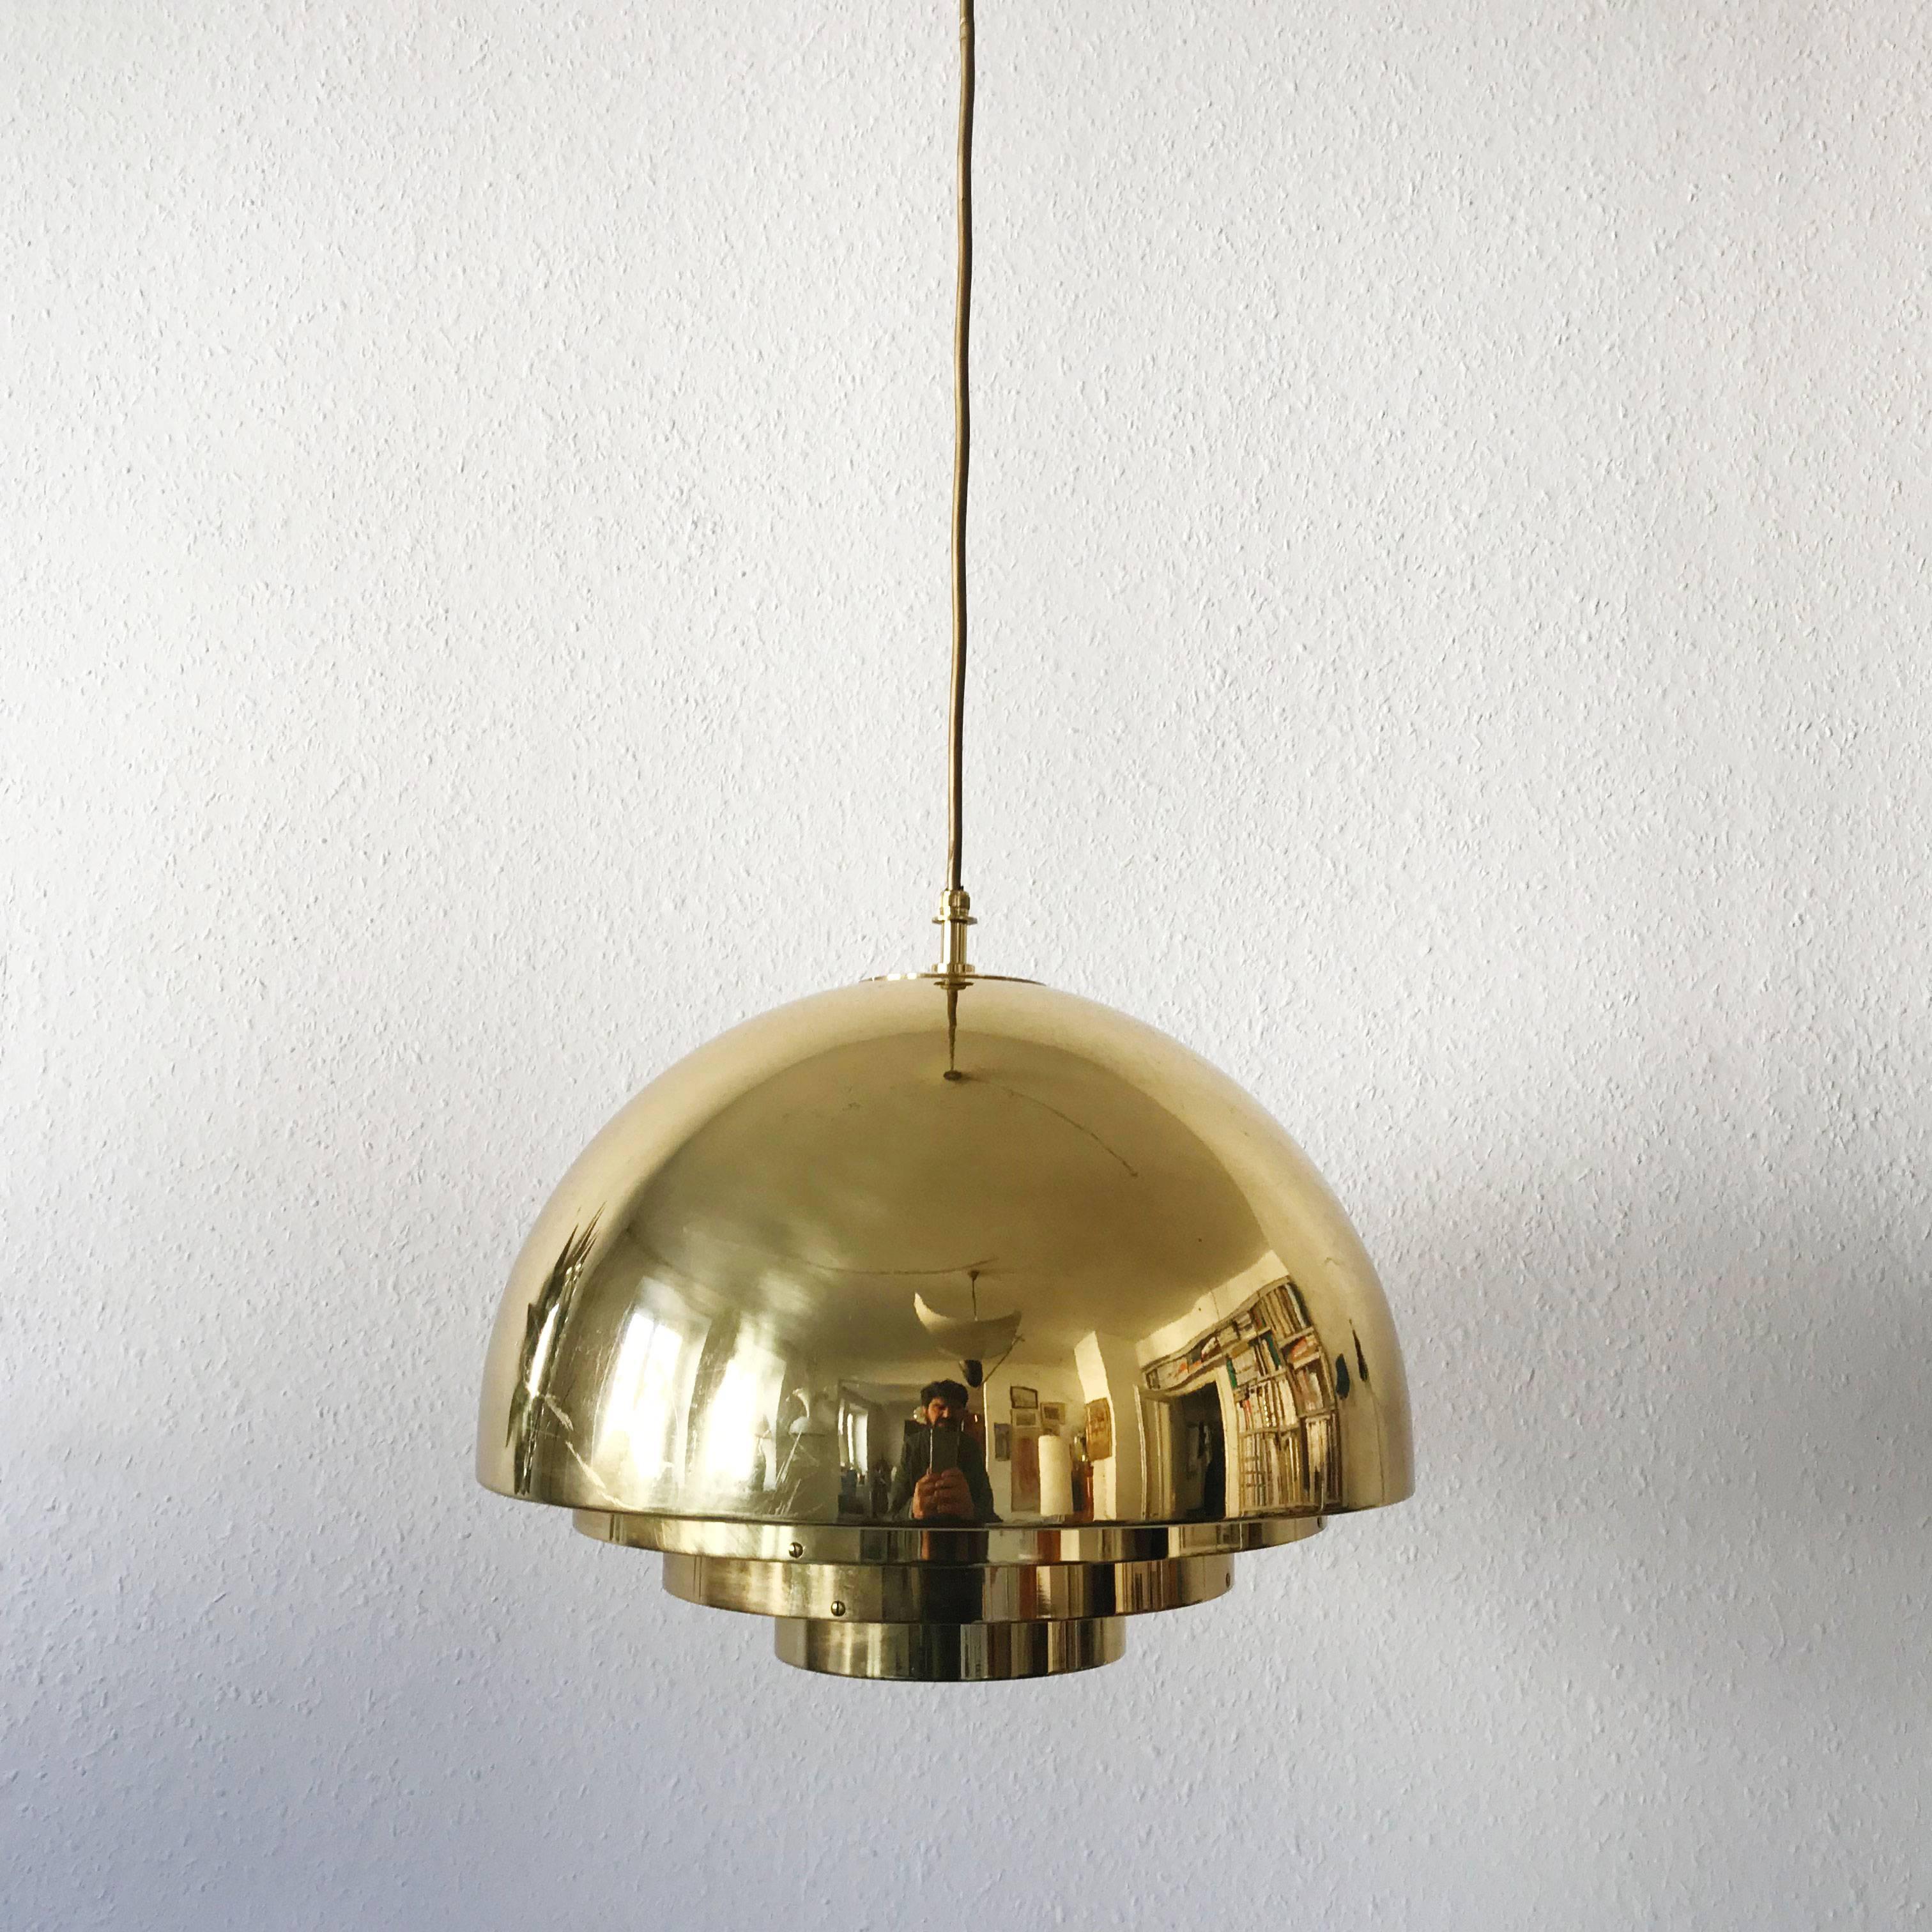 Mid-20th Century Brass Pendant Lamp Dome by Vereinigte Werkstätten München in 1960s For Sale